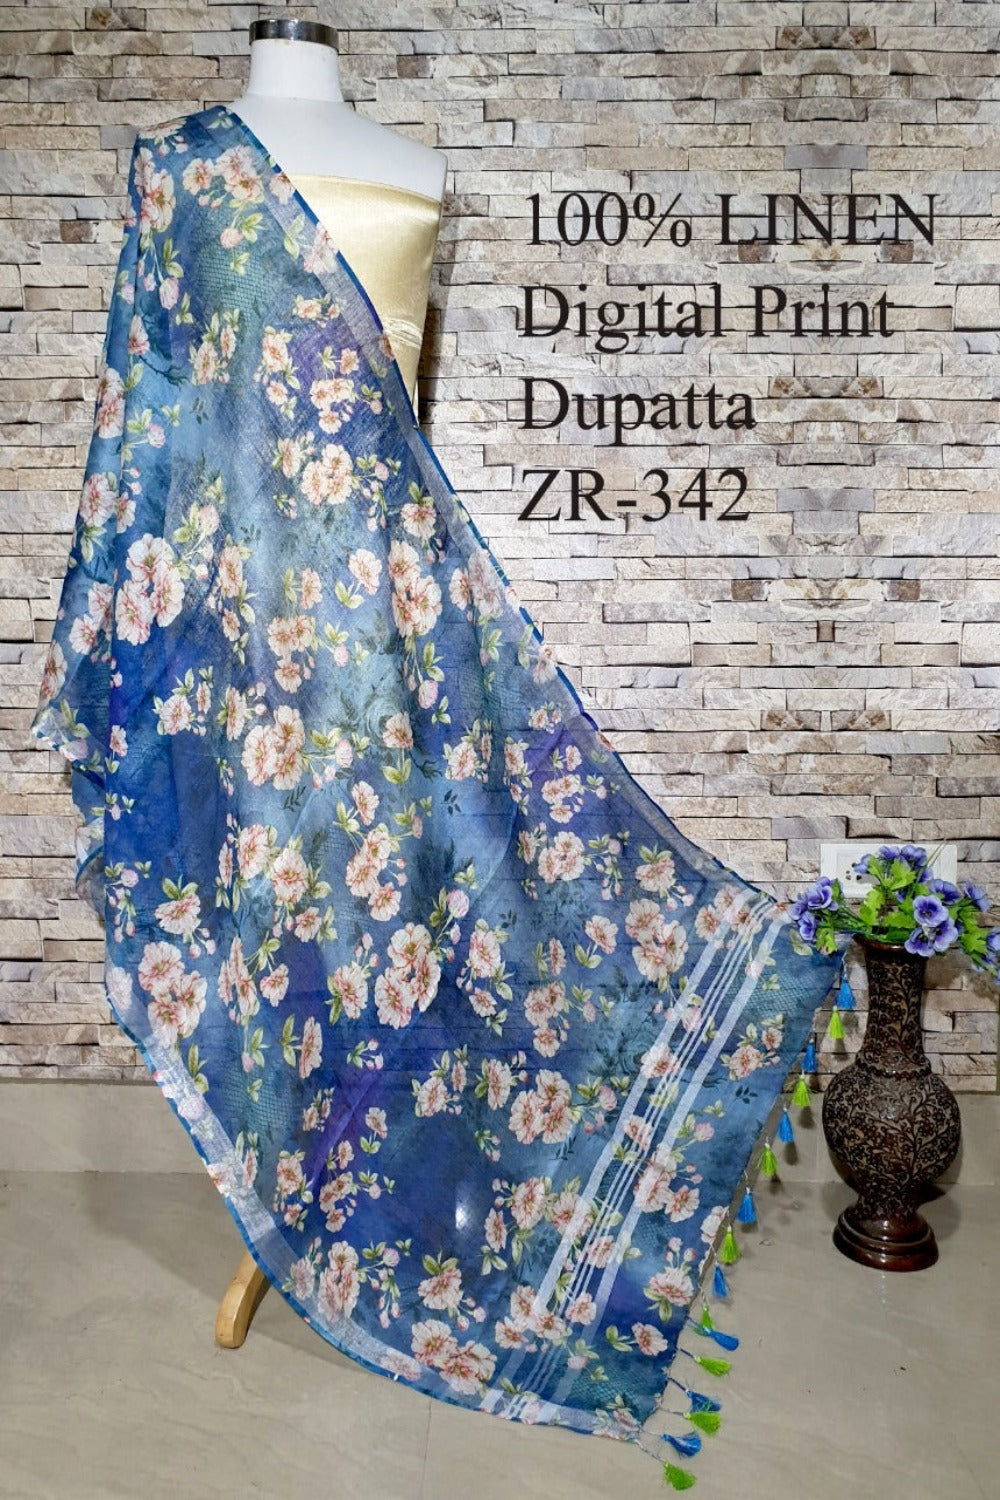 blue digital printed scarf - linenworldonline.in